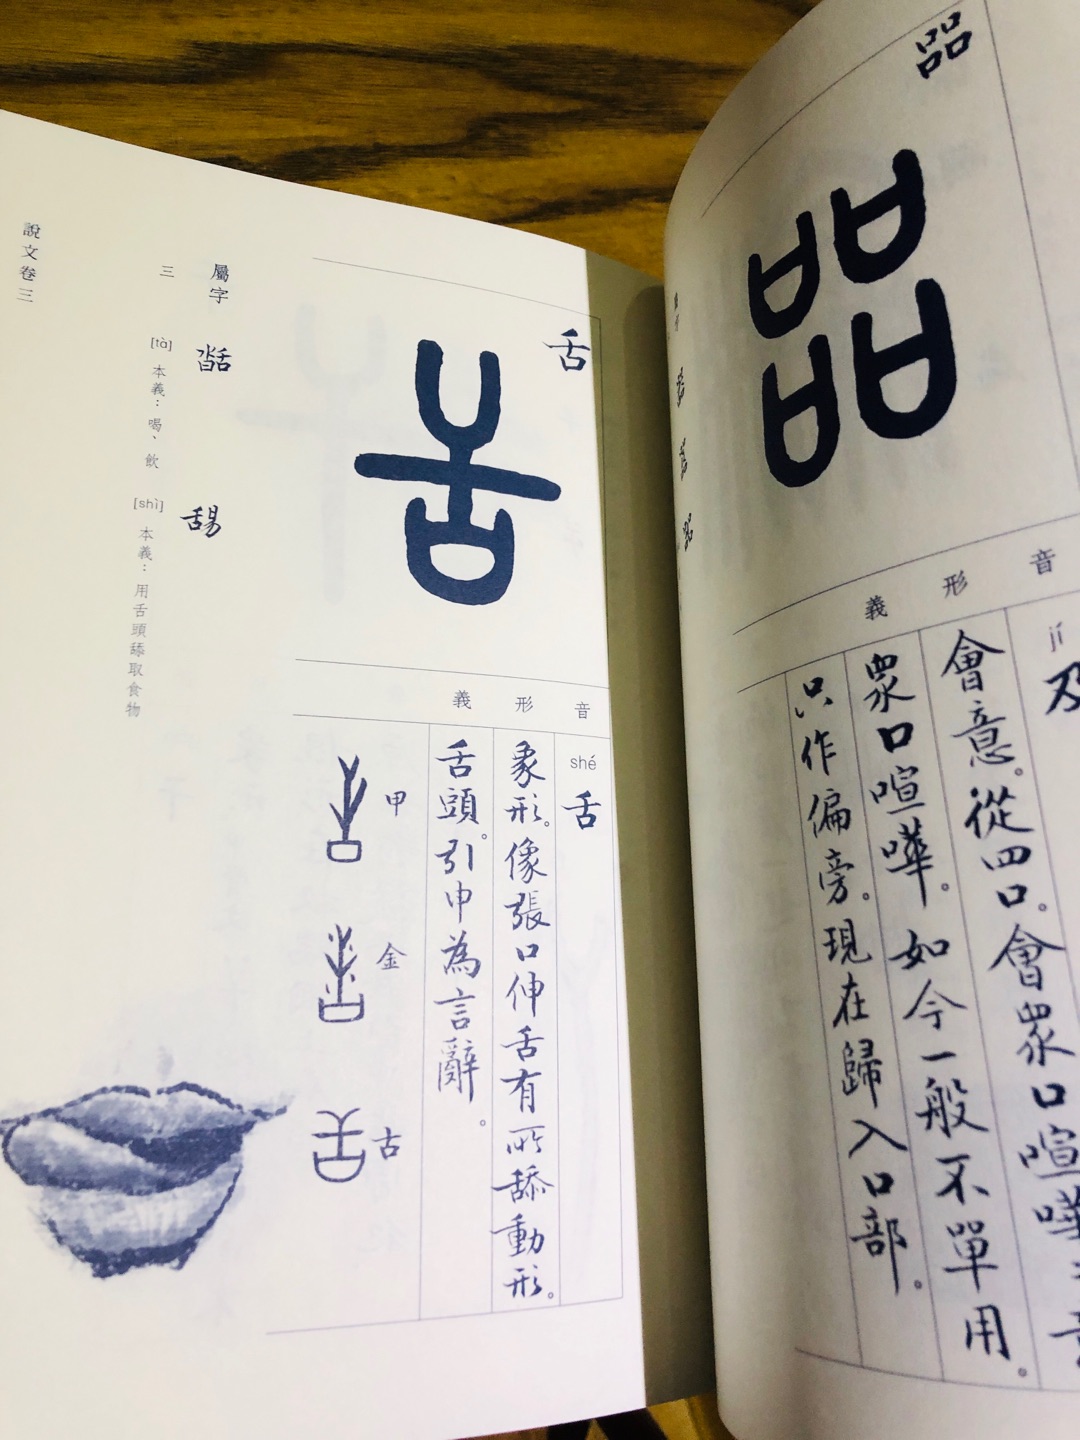 本书是中国语言文字方面的普及读物，但在同类书籍中是颇为罕见的精品，只有对《说文解字》融会贯通，并且兼擅书画者才能胜任。